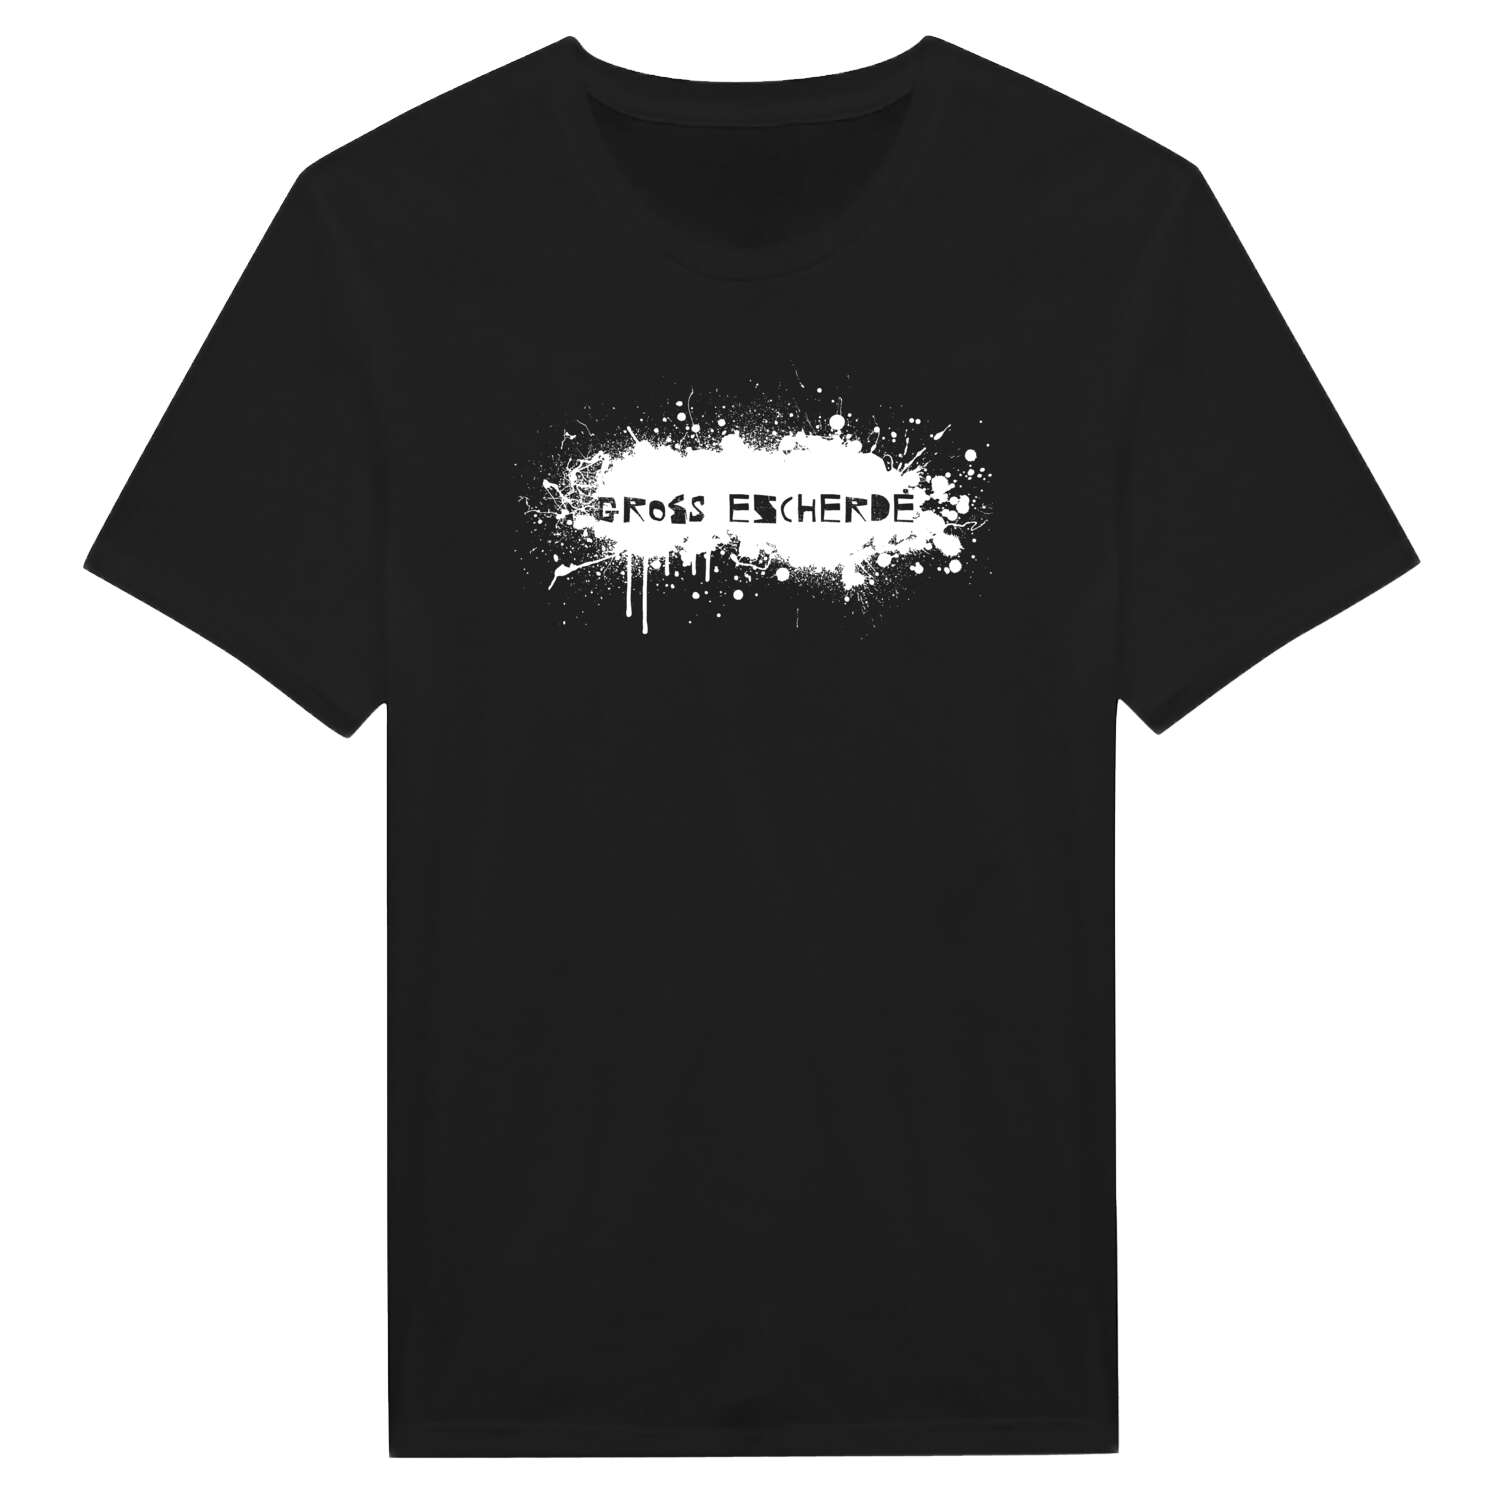 Groß Escherde T-Shirt »Paint Splash Punk«